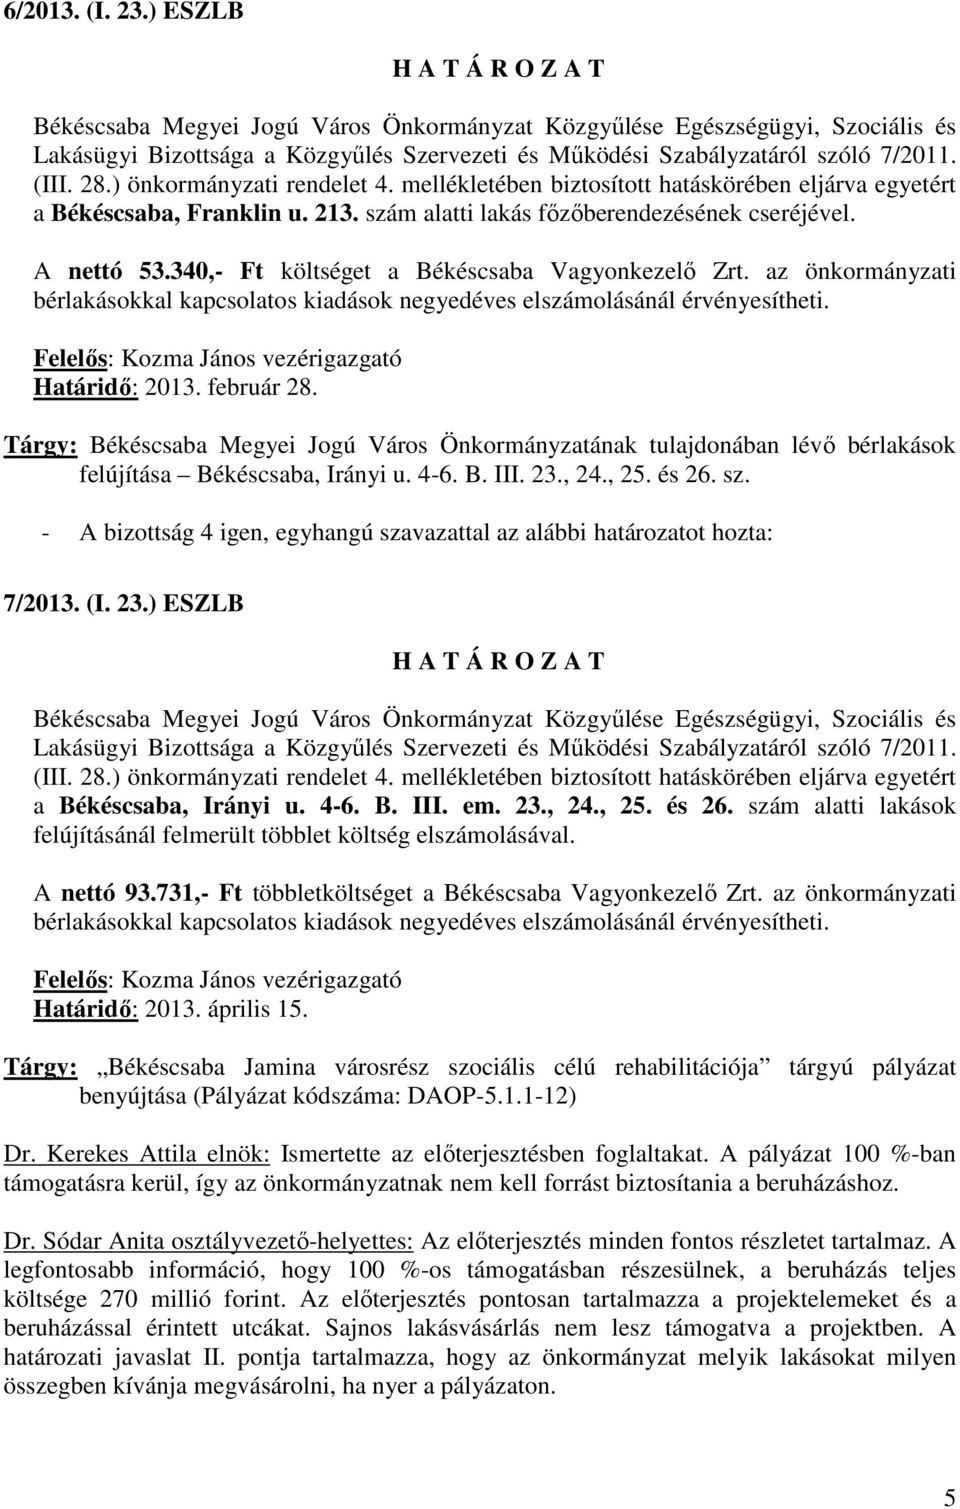 A nettó 93.731,- Ft többletköltséget a Békéscsaba Vagyonkezelı Zrt. az önkormányzati Határidı: 2013. április 15.